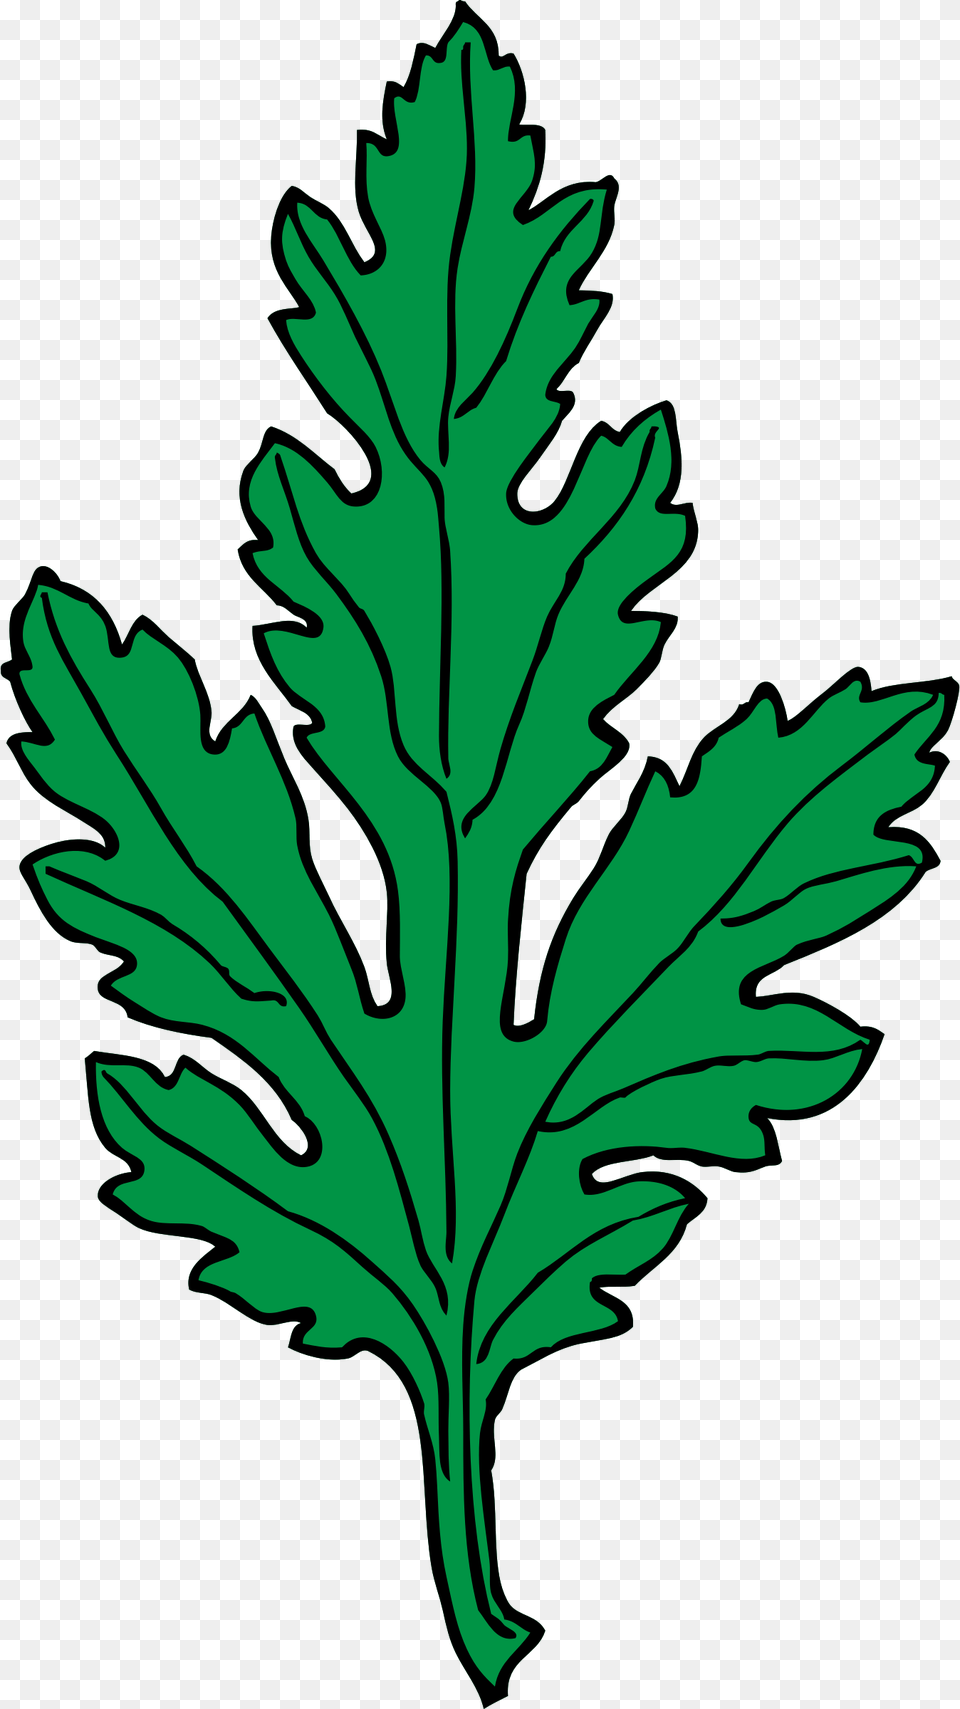 Green Leaf Clip Art, Herbs, Plant, Herbal, Food Png